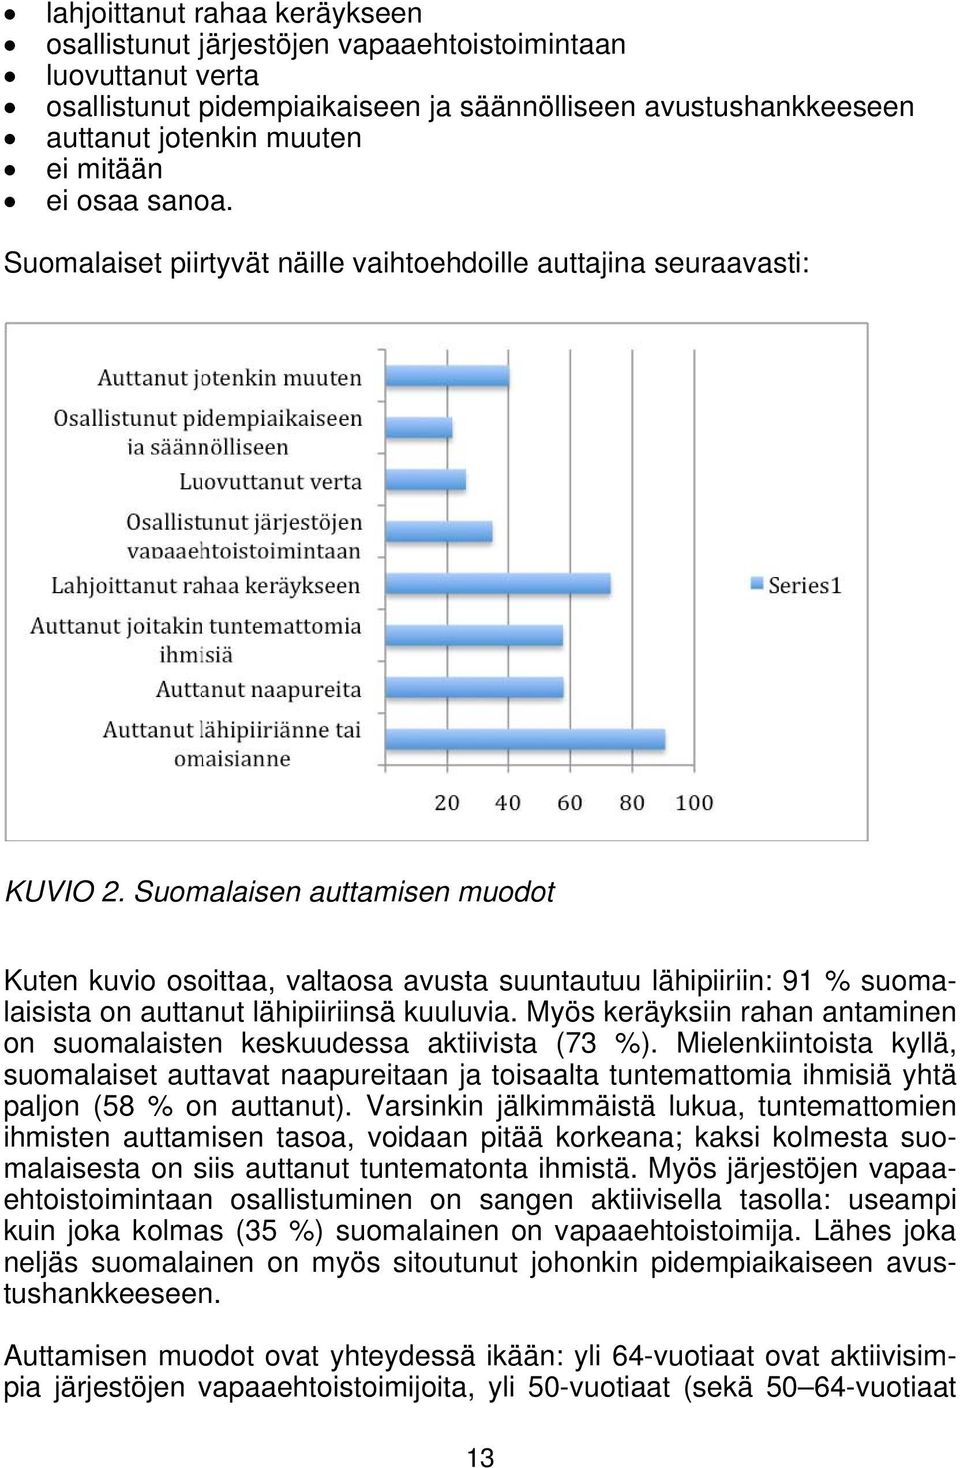 Suomalaisen auttamisen muodot Kuten kuvio osoittaa, valtaosa avusta suuntautuu lähipiiriin: 91 % suomalaisista on auttanut lähipiiriinsä kuuluvia.